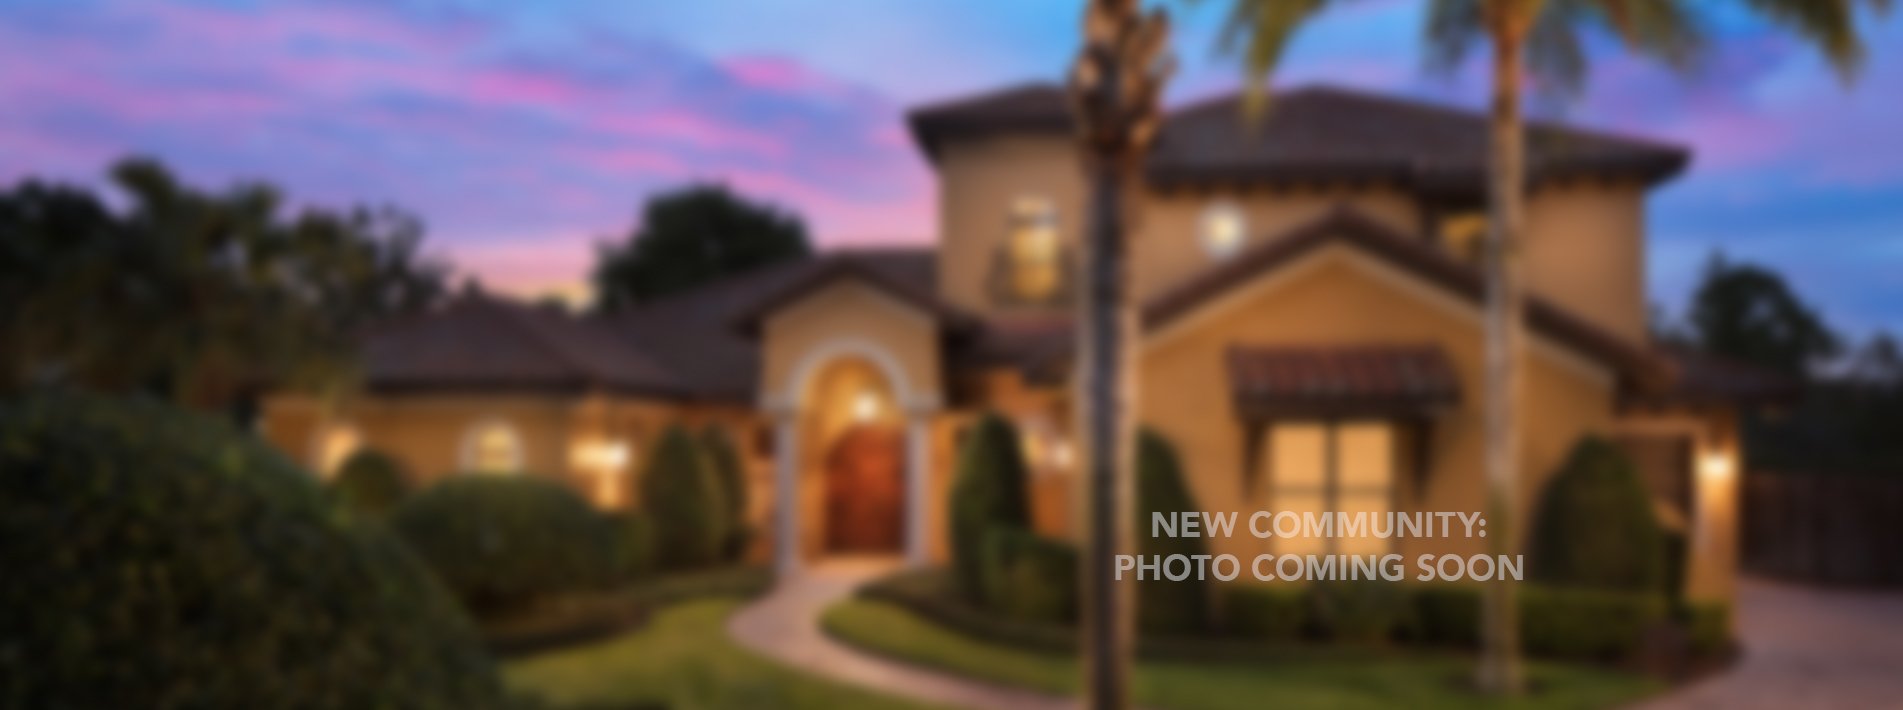 Ritz-Carlton Residences Luxury Orlando Real Estate